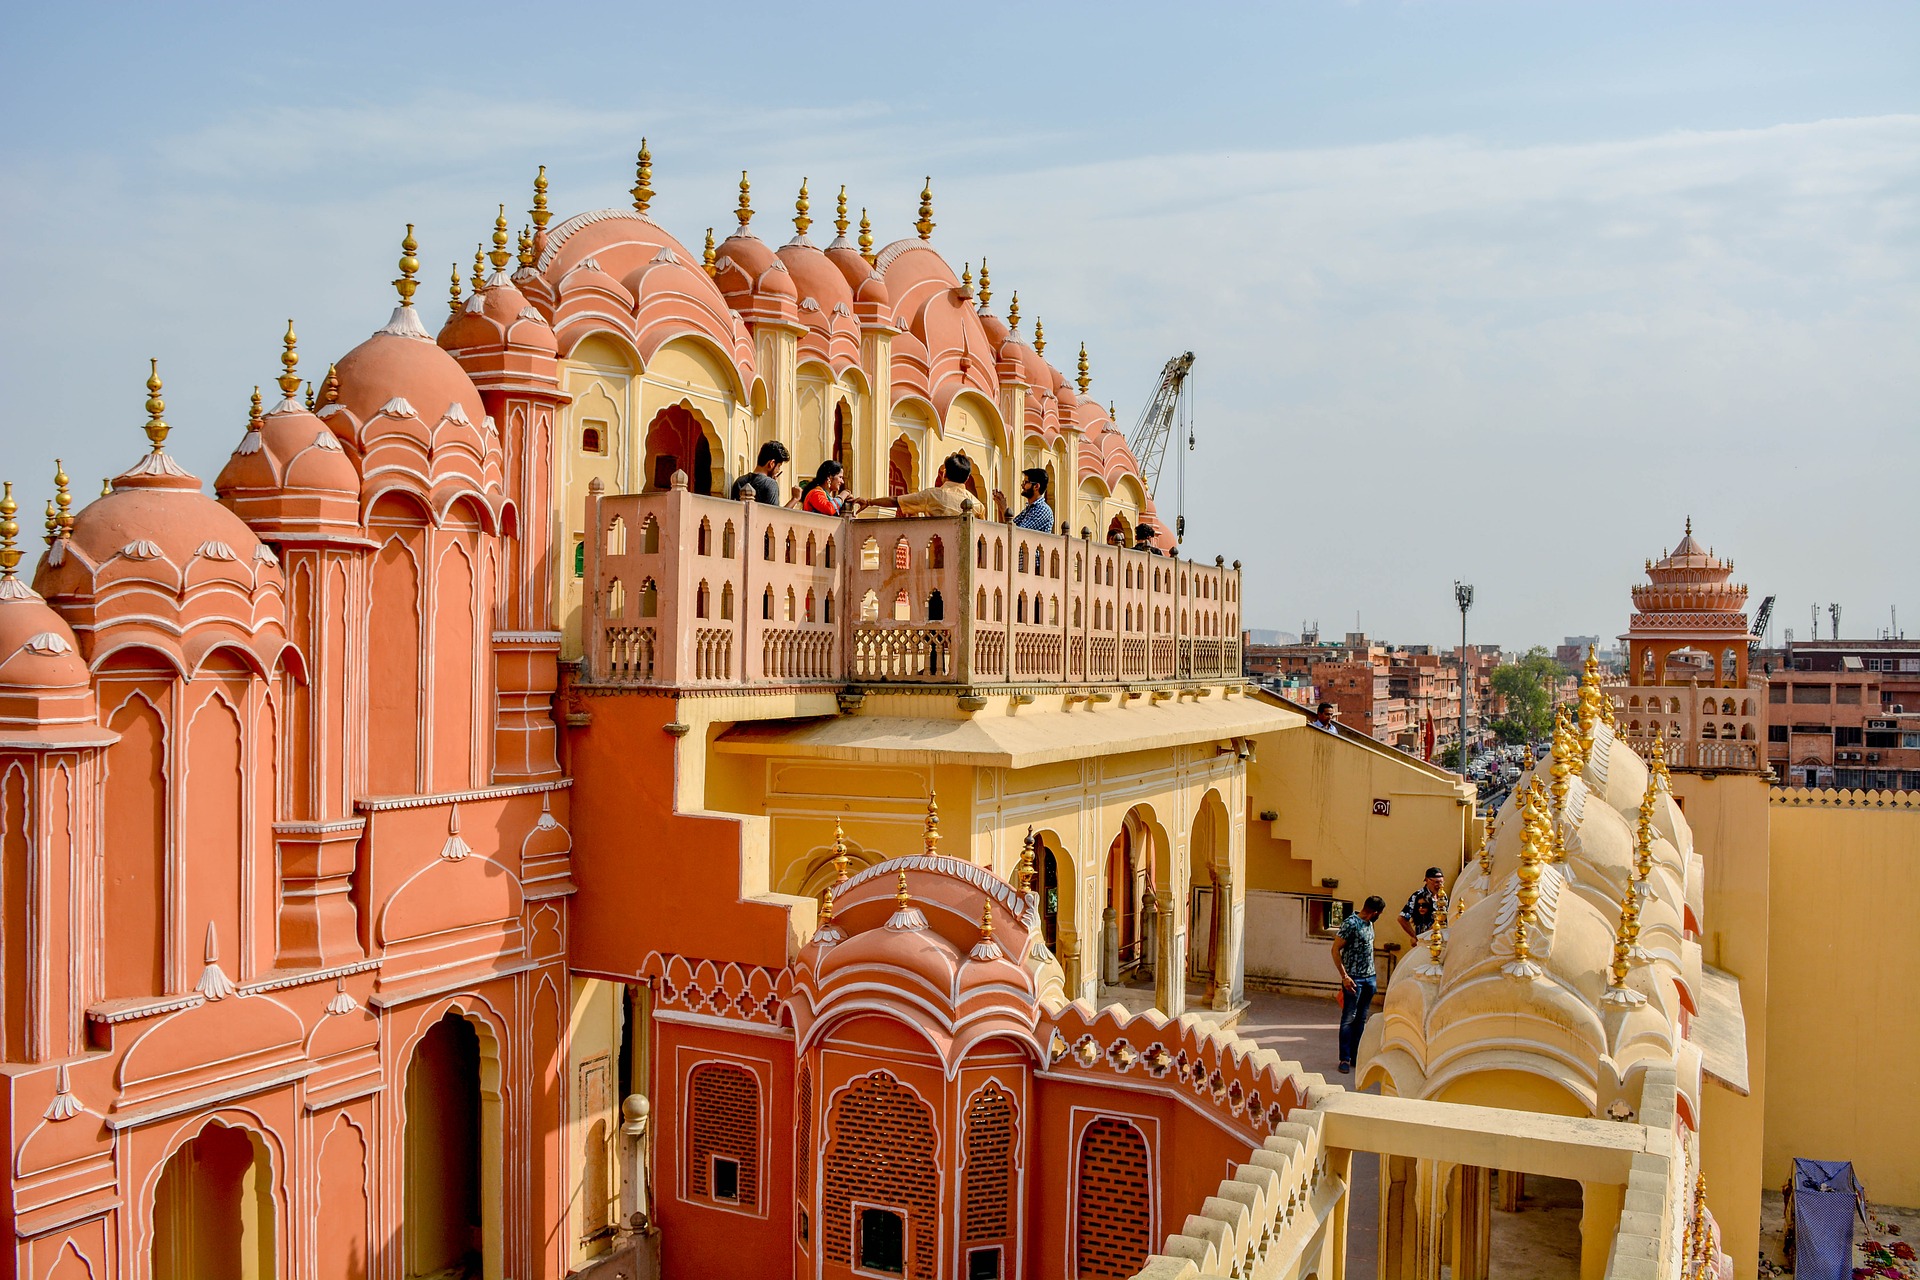 A világ legszebb palotái között: Hawa Mahal – Dzsaipur, India